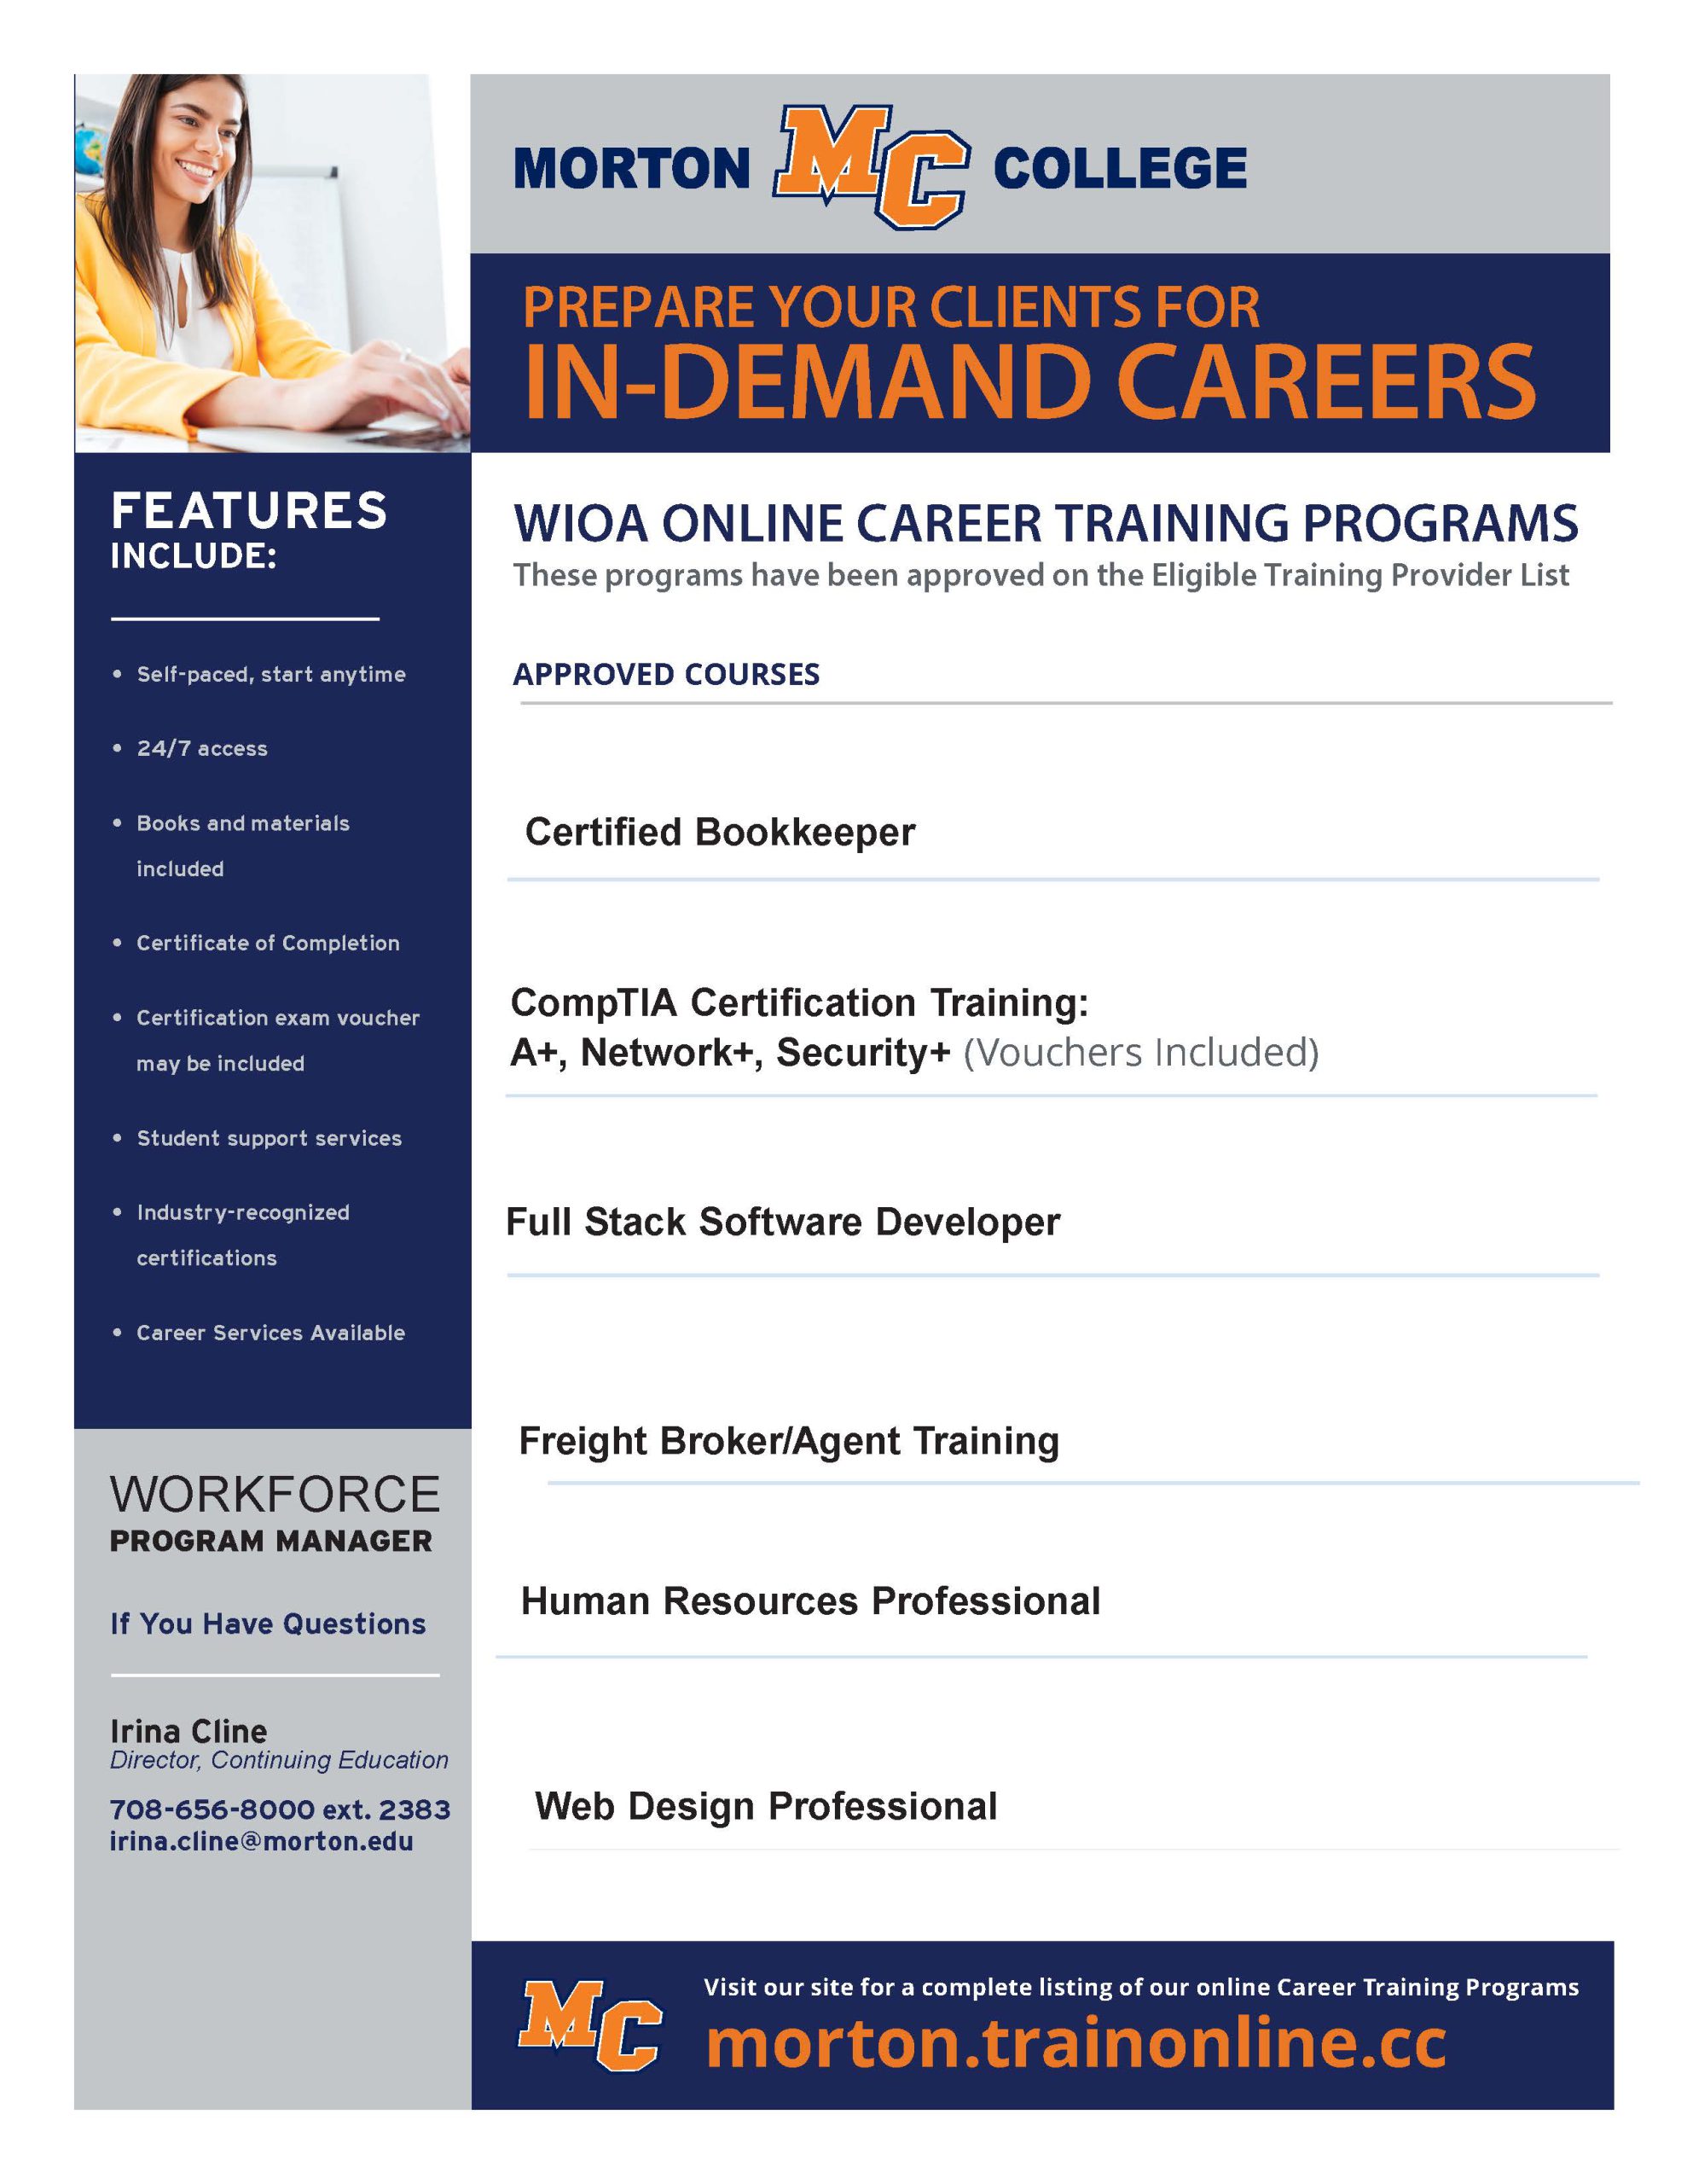 WIOA Online Programs updated